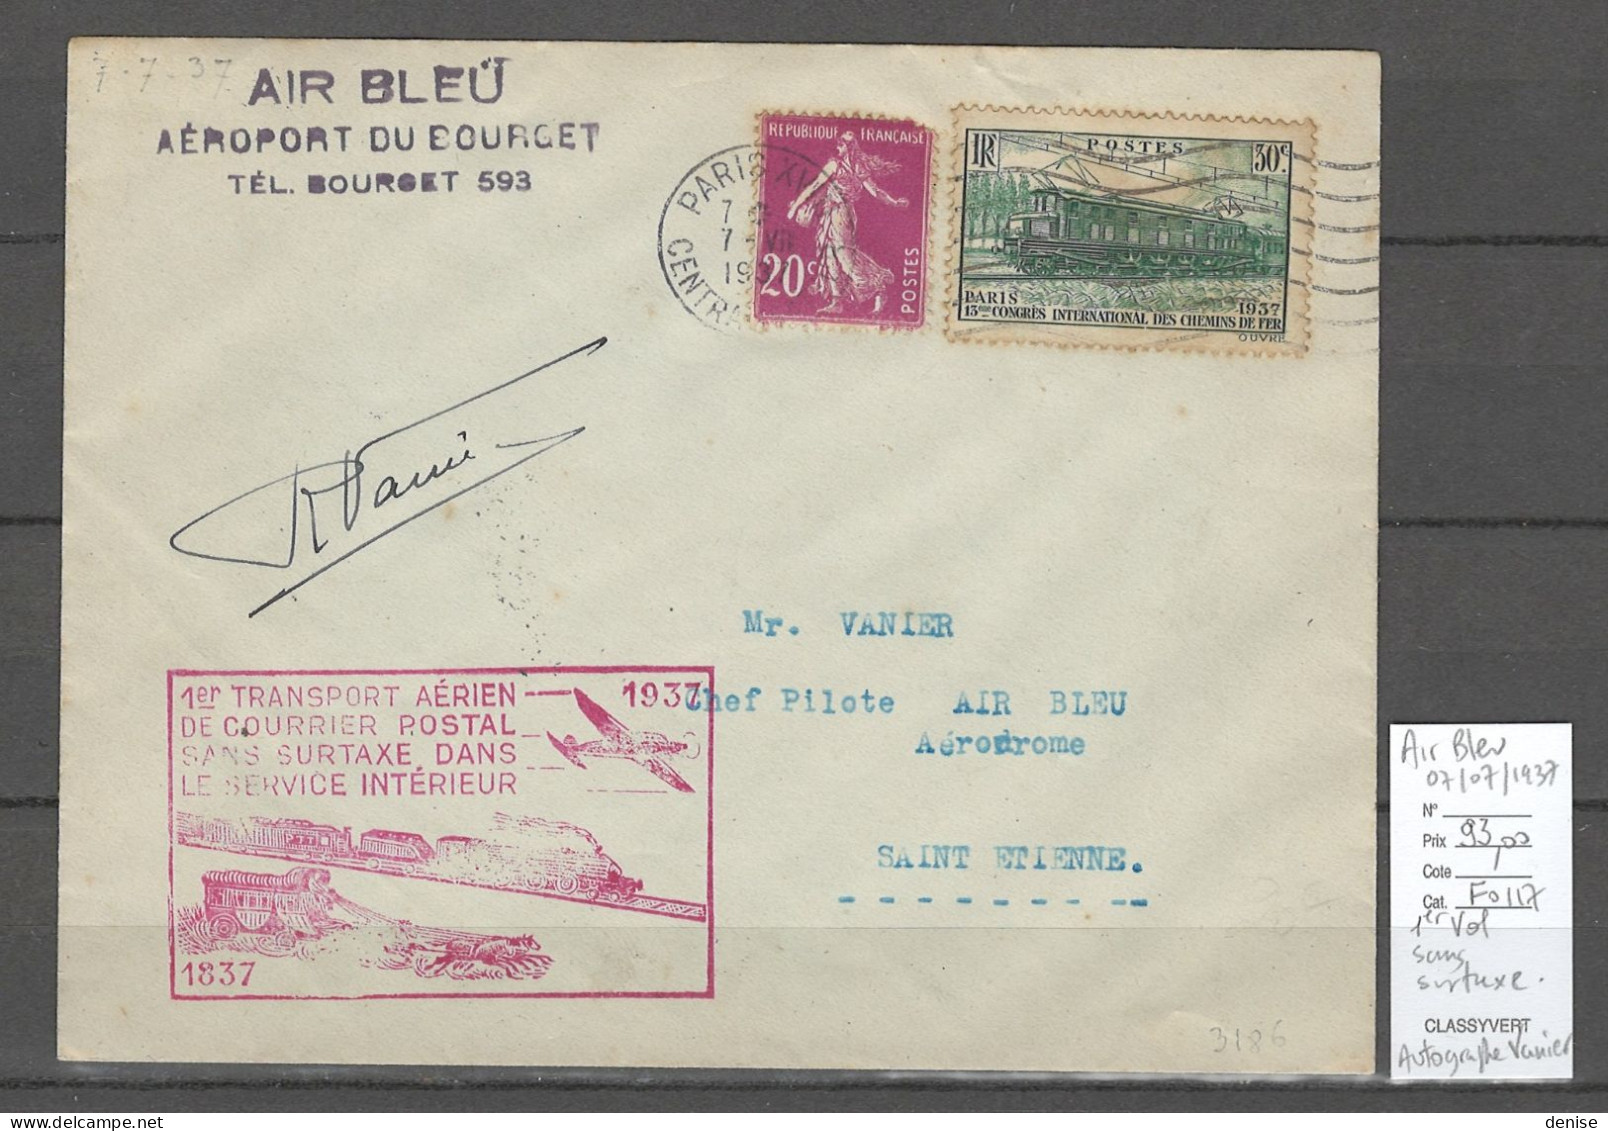 France - 1er Service Postal SANS SURTAXE - AIR BLEU - AUTOGRAPHE DU PILOTE VANIER - 1937 - 1927-1959 Lettres & Documents